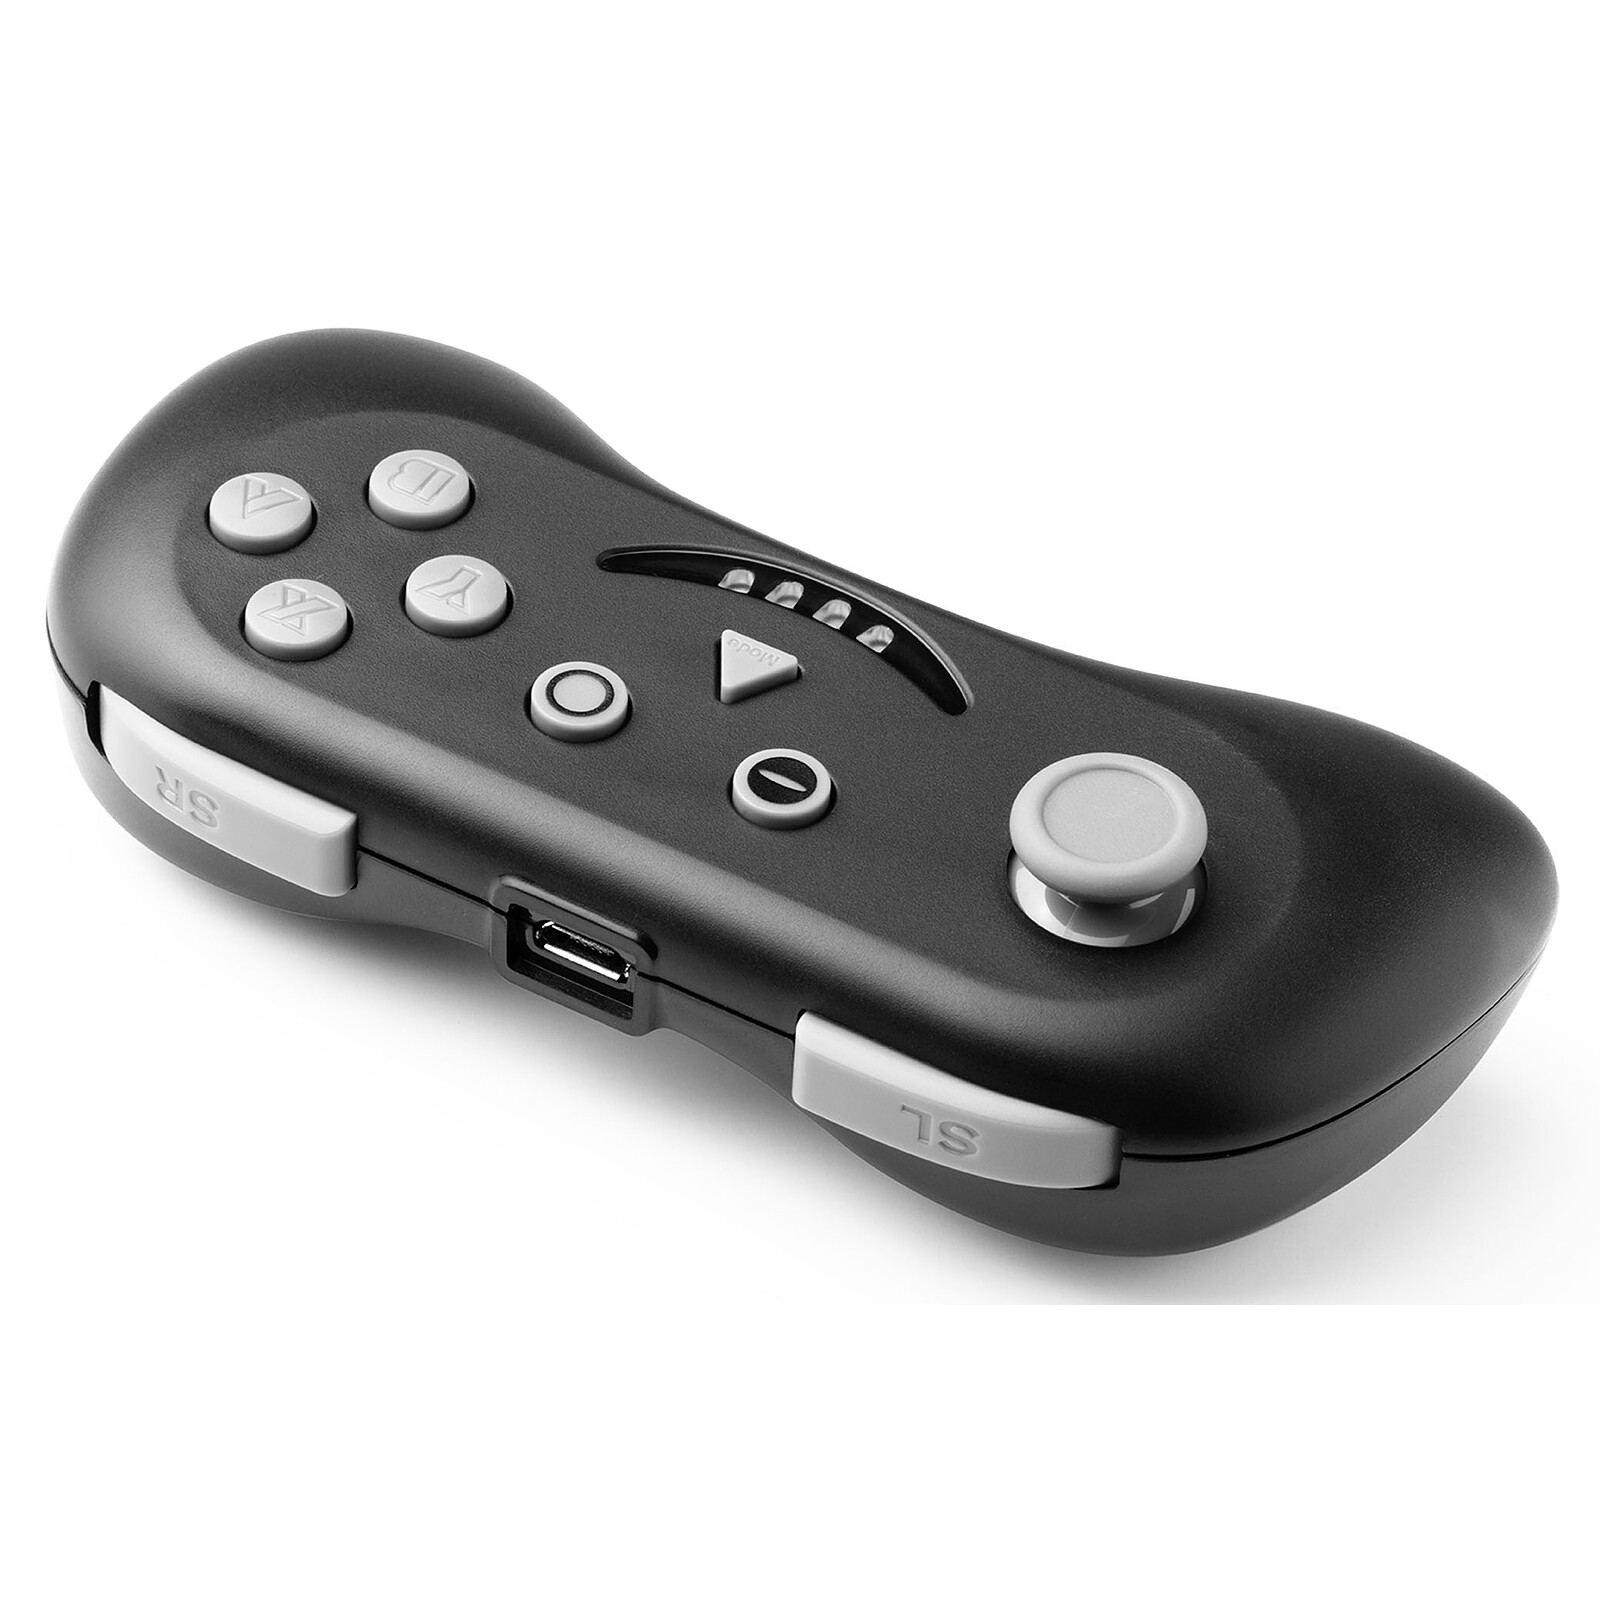 Manettes pour Switch/switch Lite, Manette sans fil pour Nintendo